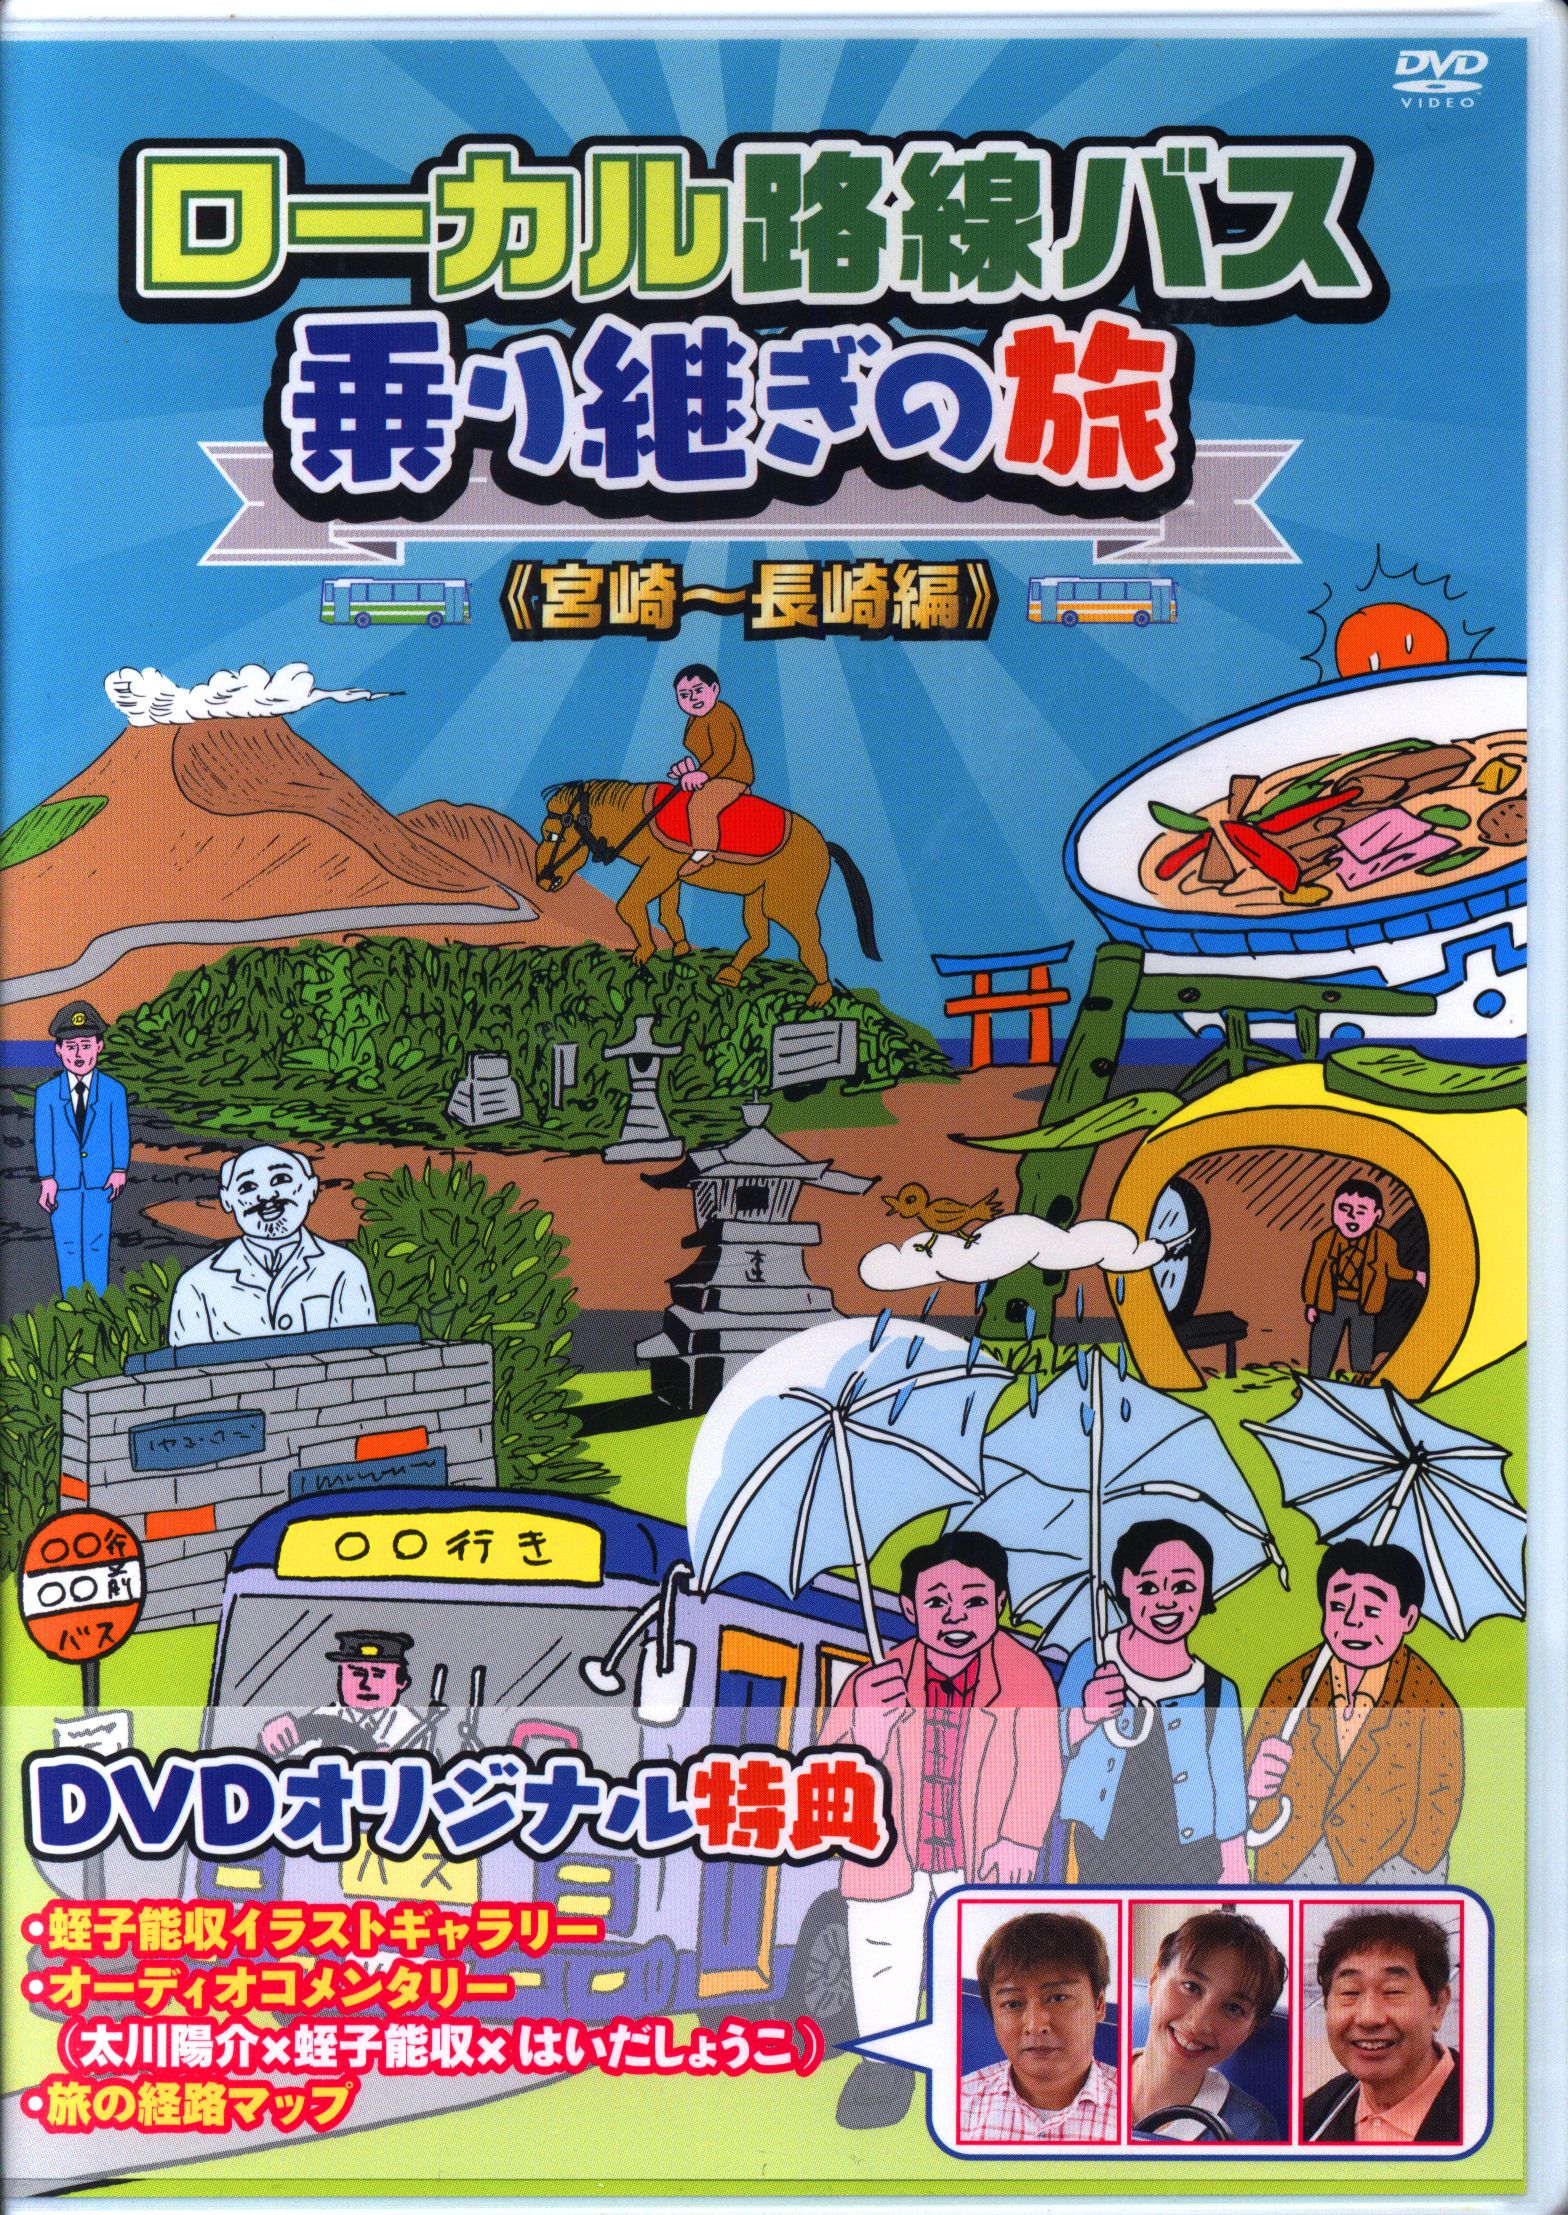 ローカル路線バス乗り継ぎの旅 DVD セル版 14巻セット - お笑い/バラエティ